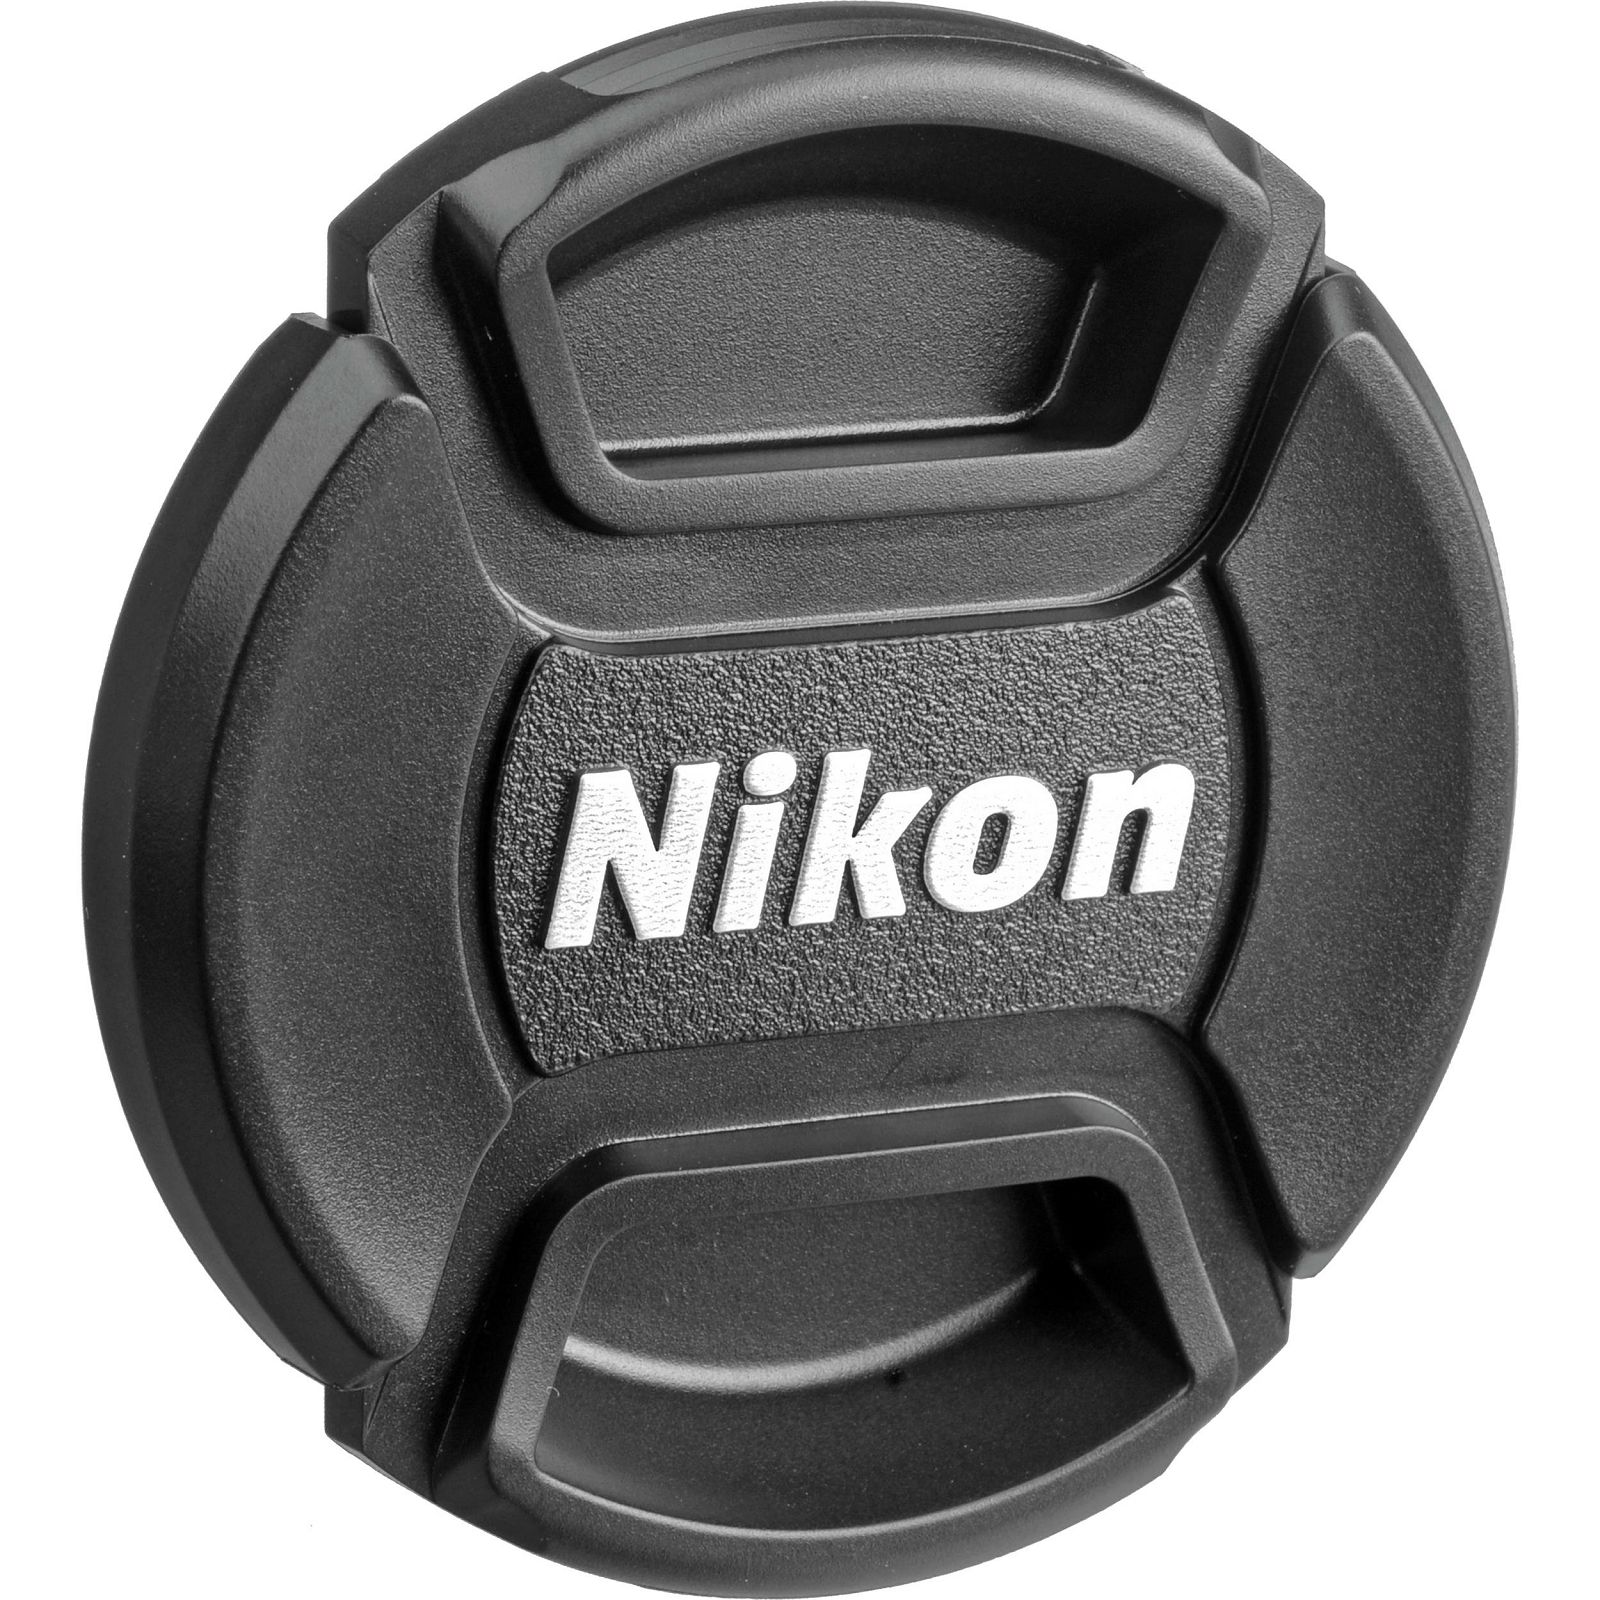 Nikon AI 55mm f/2.8 Micro FX 1:1 Macro objektiv fiksne žarišne duljine s ručnim fokusiranjem Nikkor 55 F2.8 2.8 manual focus prime lens (JAA616AB)